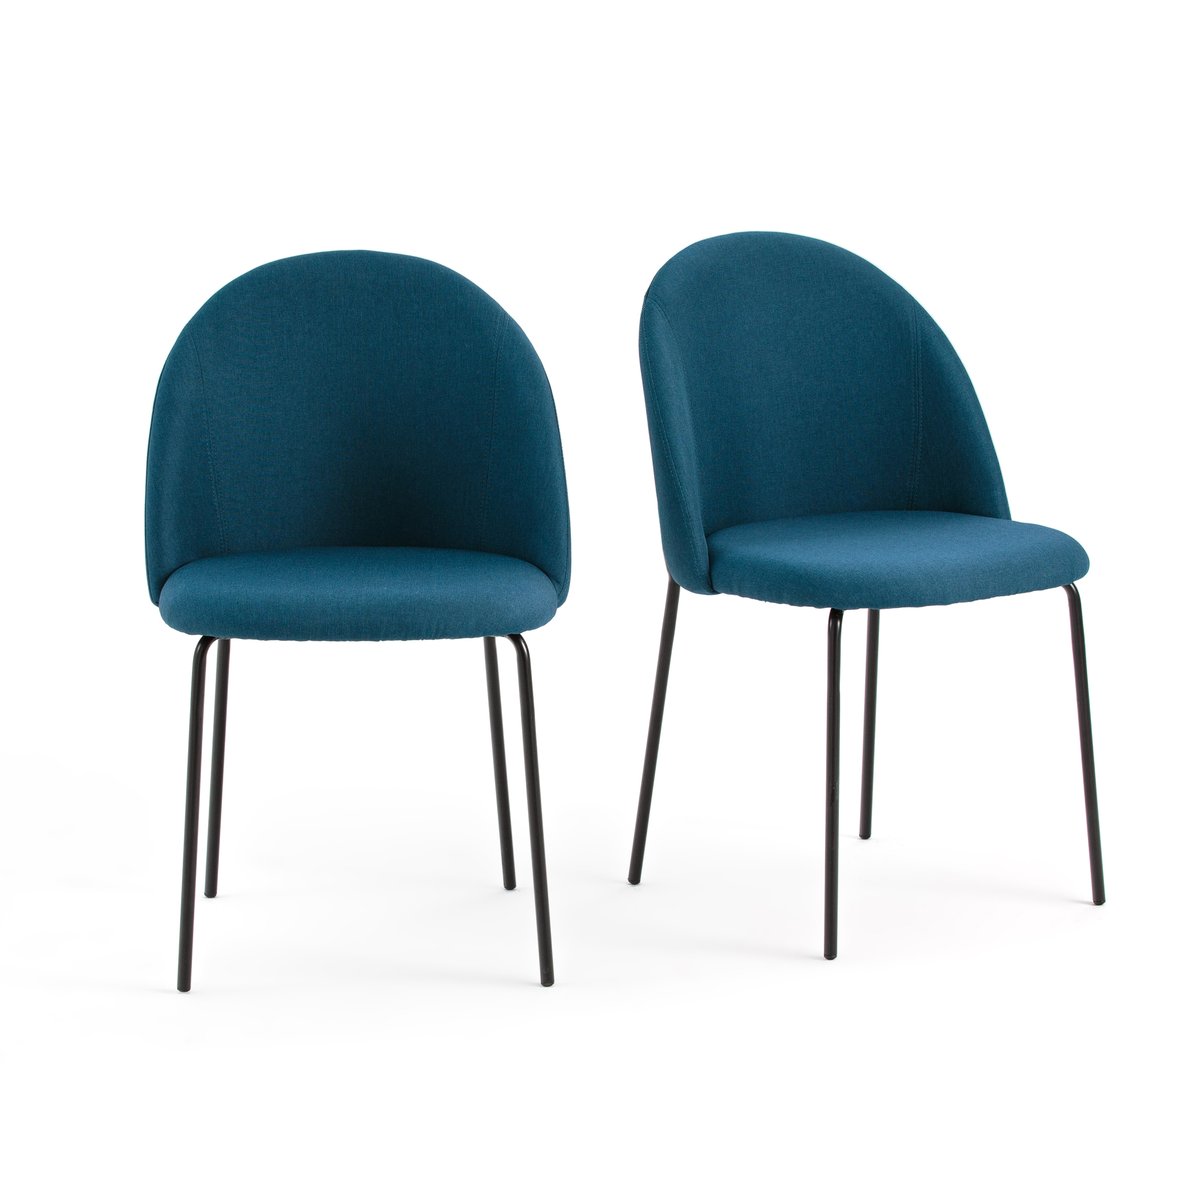 Комплект из 2 стульев NORDIE La Redoute единый размер синий